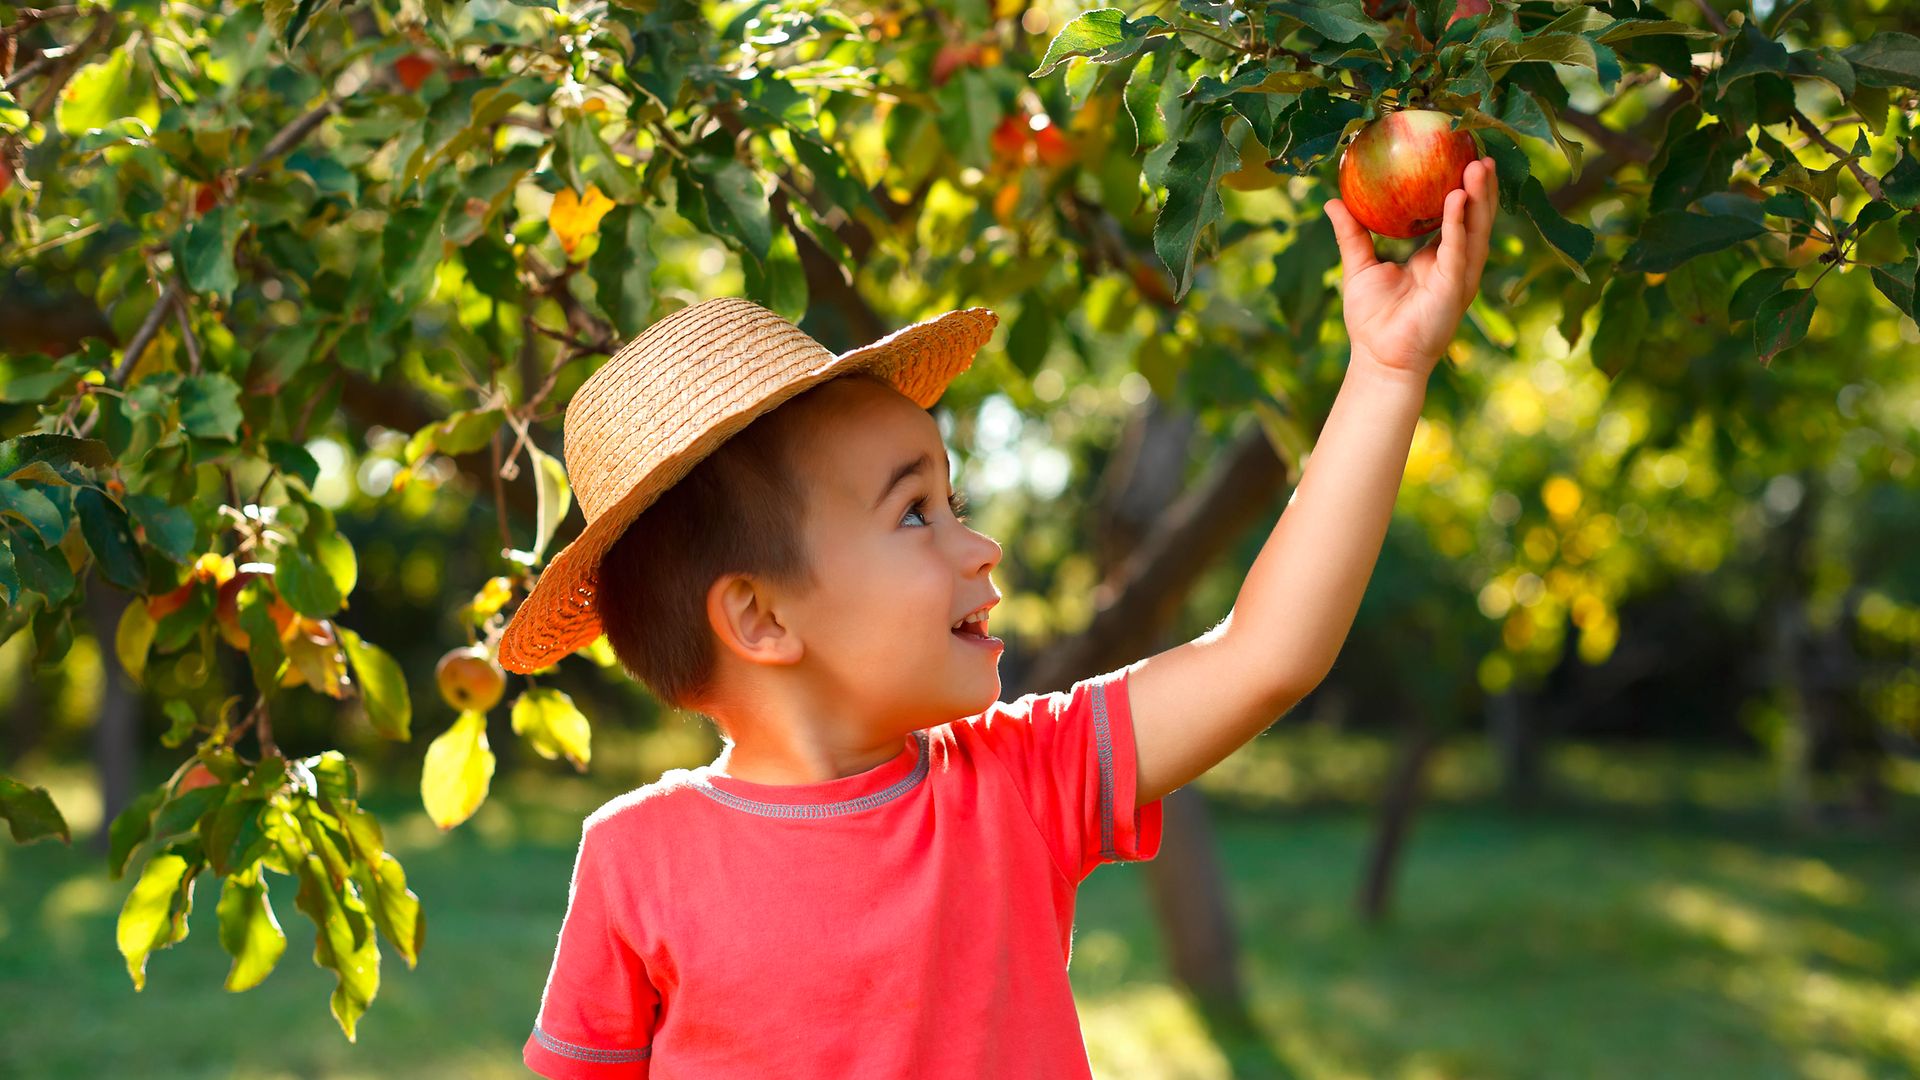 Ein kleiner Junge greift nach einem Apfel in einem Apfelbaum.